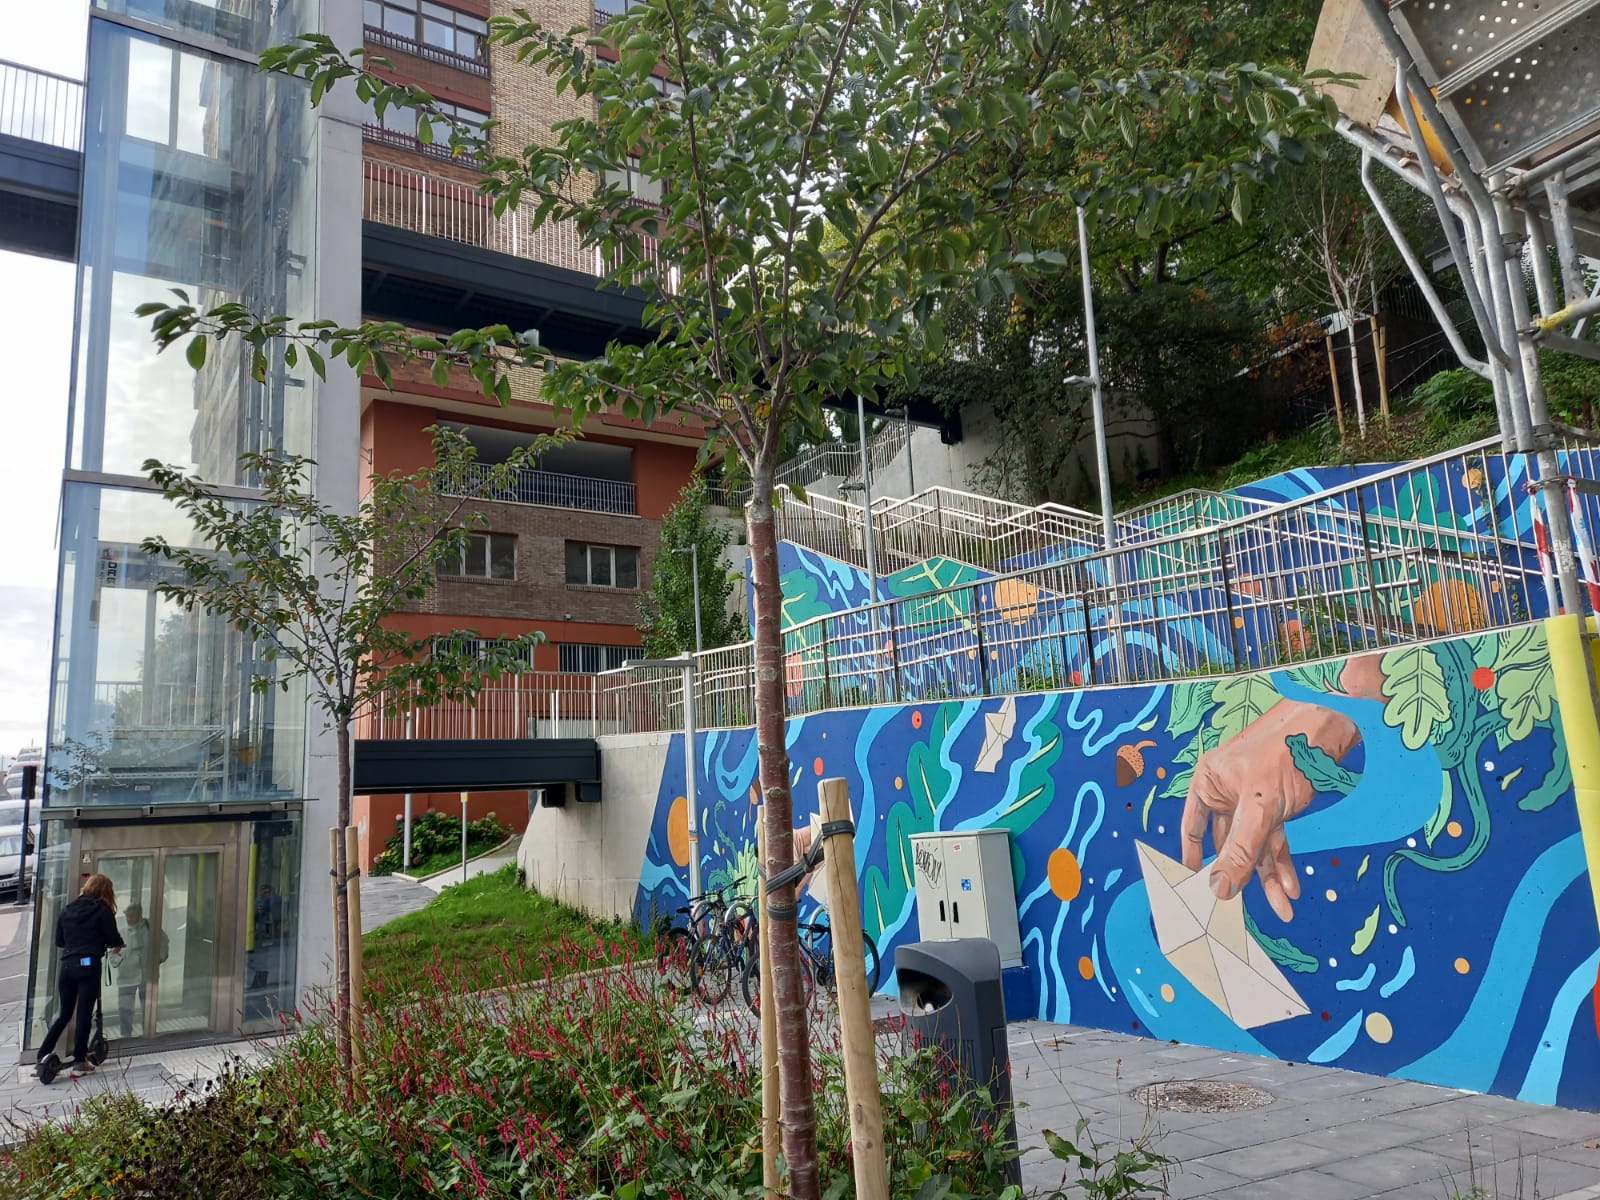 indice2 - (Fotos) Donostia Apain embellece las fachadas a lo largo del Urumea